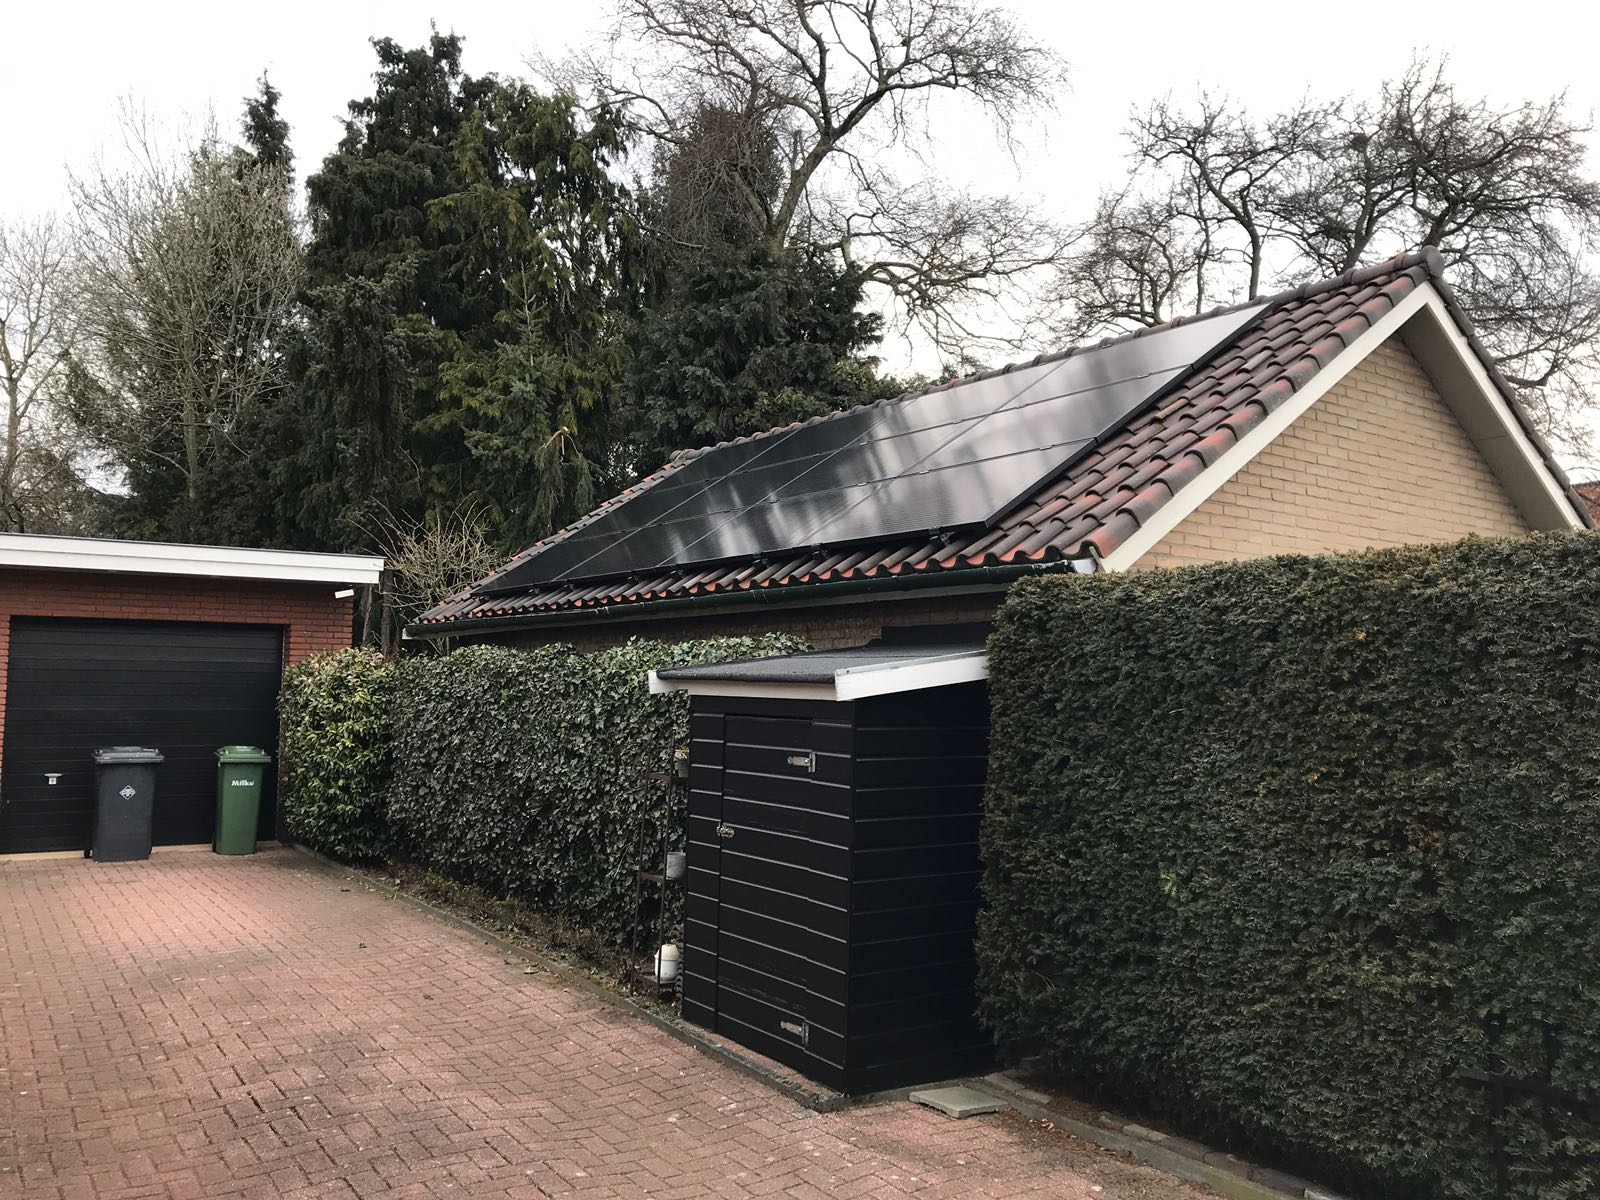 zonnepanelen installateur, vak apart installaties, energiezuinig huis, Hengelo, Enschede, Almelo